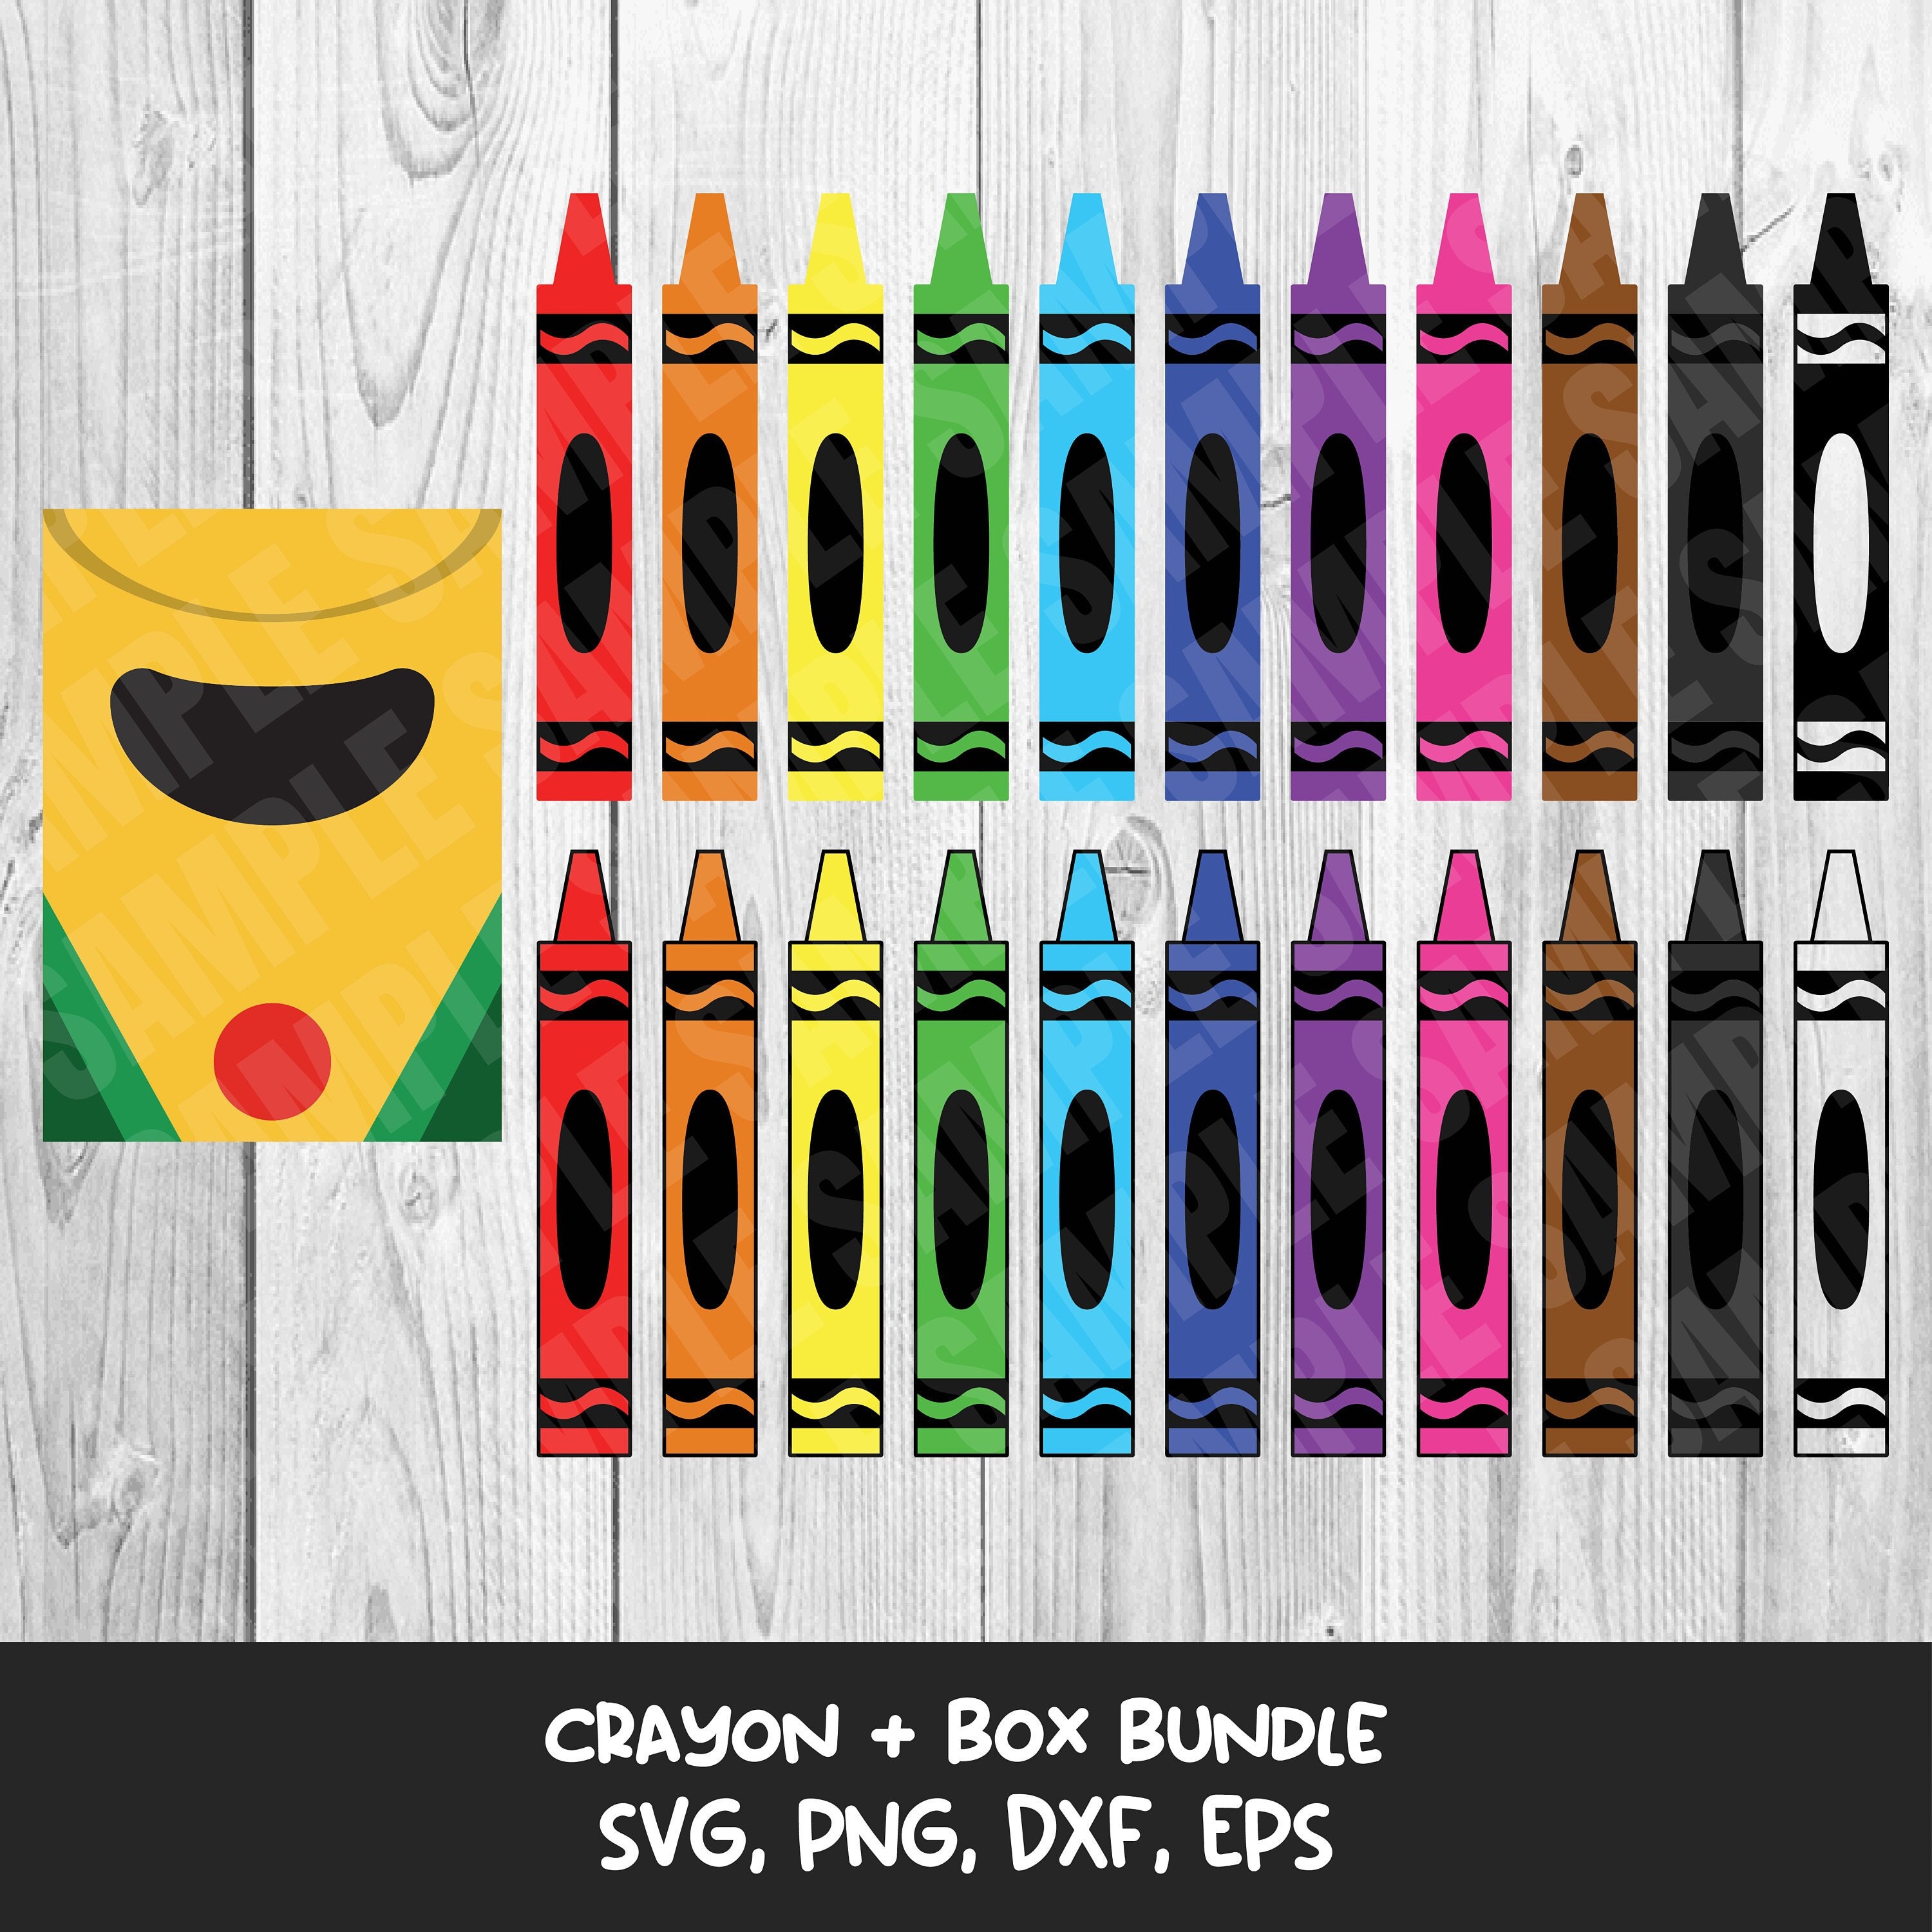 Crayon Holder Template Bundle — Boydston Grove